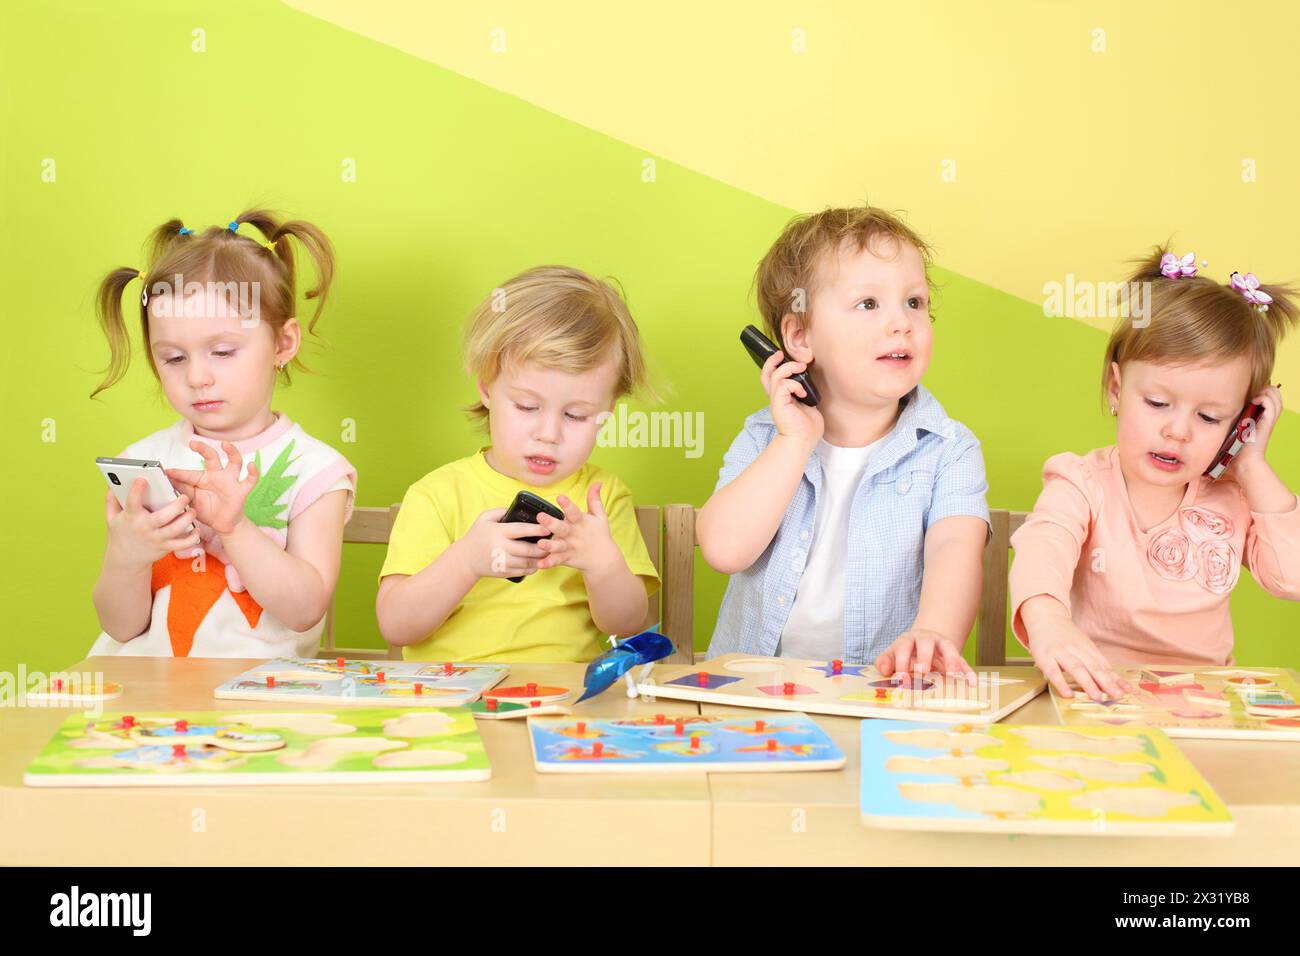 Deux garçons et deux filles avec des téléphones dans les mains sont assis à une table avec des jouets Banque D'Images